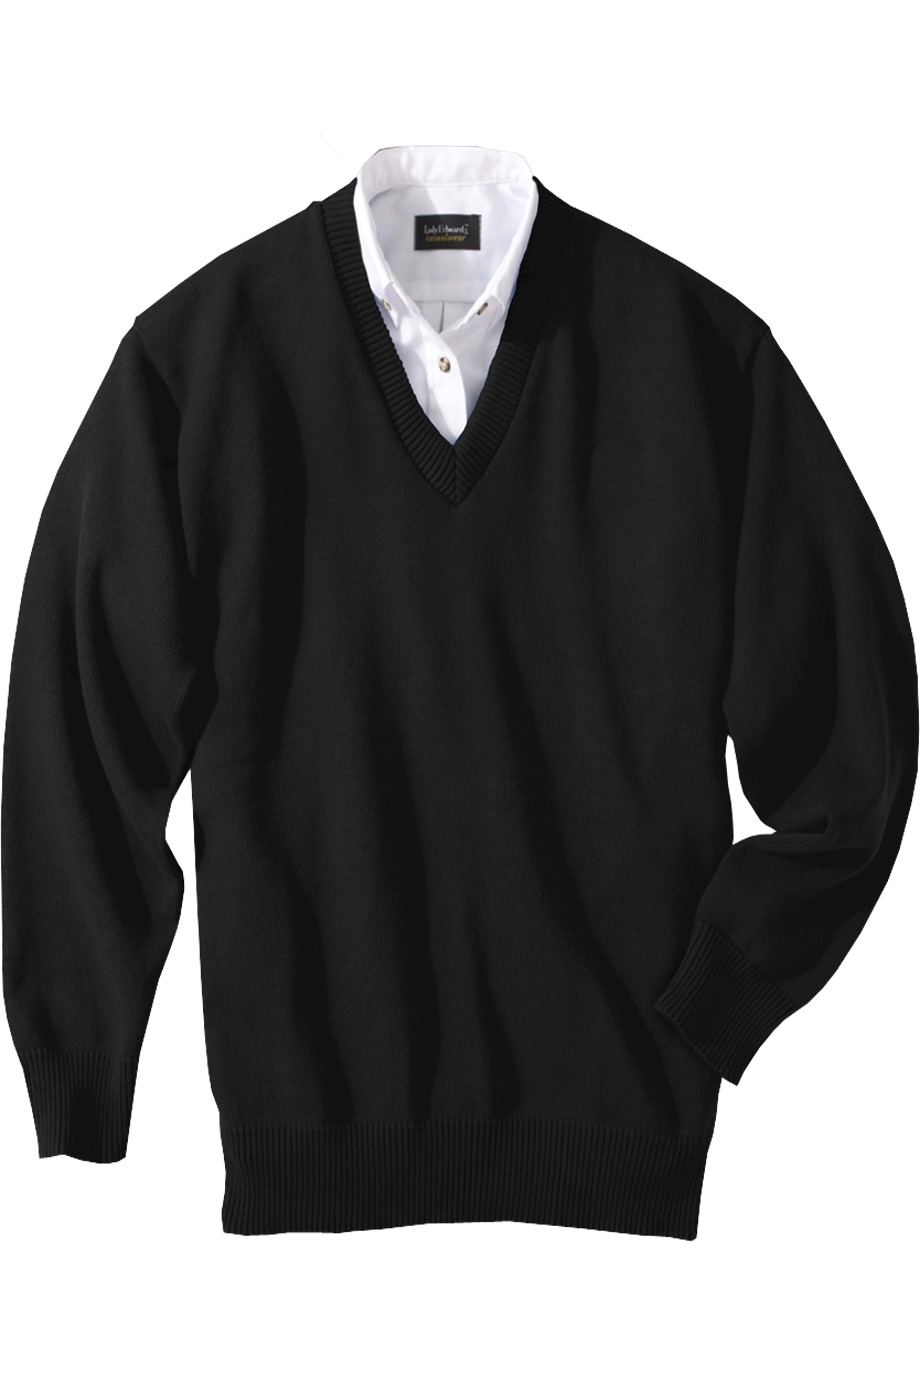 Edwards Garment 790 - Jersey Stitch V-Neck Sweater